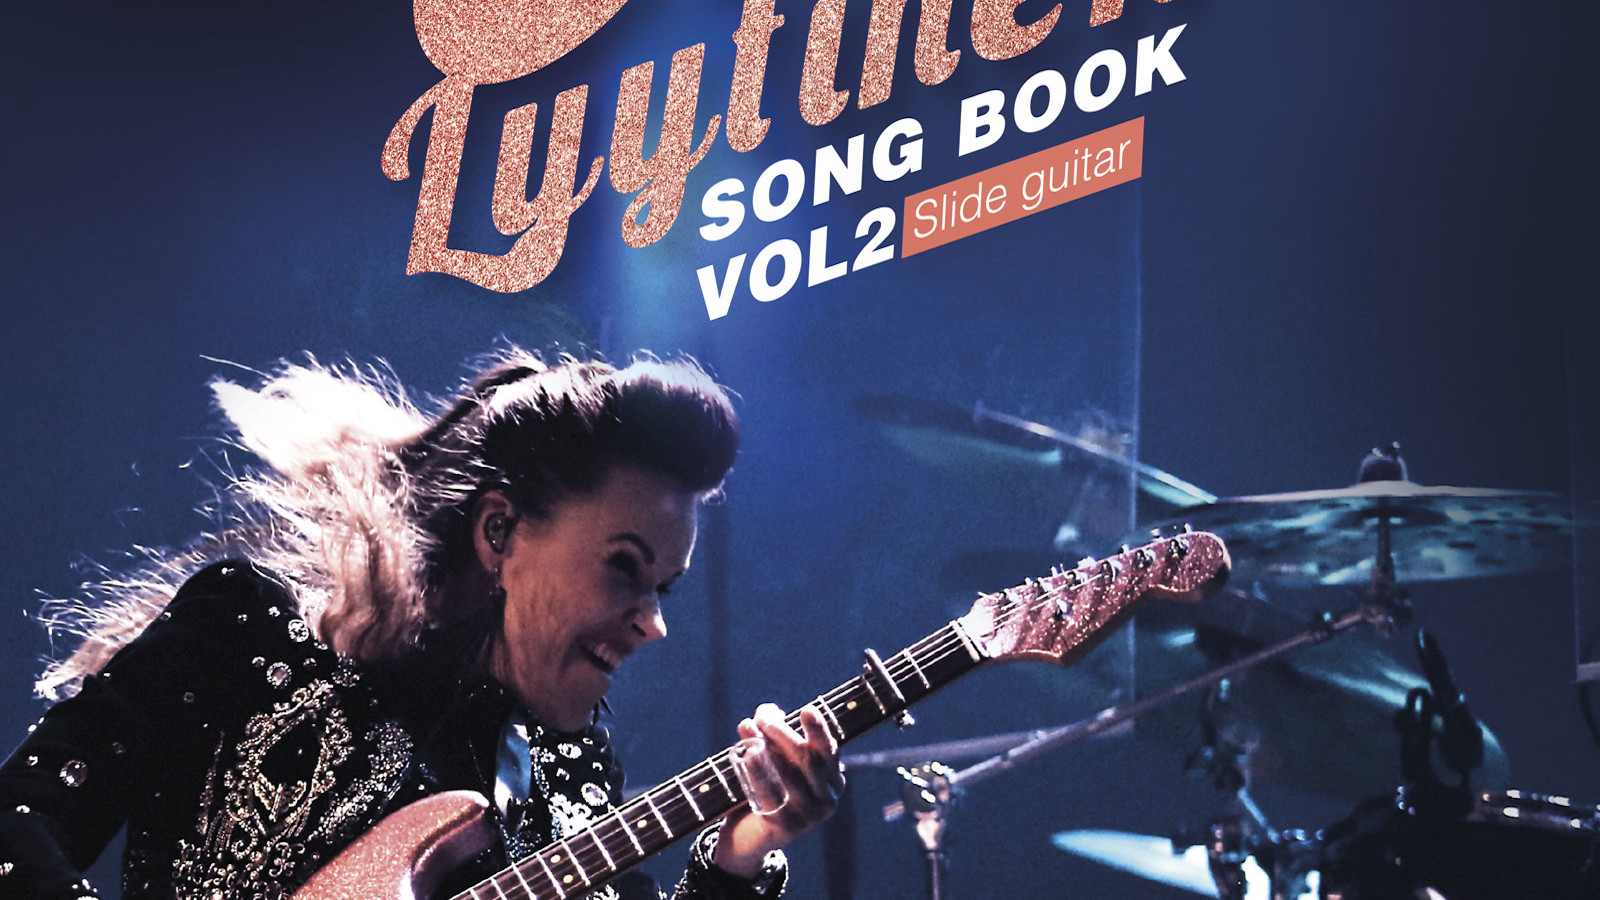 Kuvassa on Erja Lyytinen sivuttain soittamassa kitaraa.  Taustalla lukee Lyytinen.  